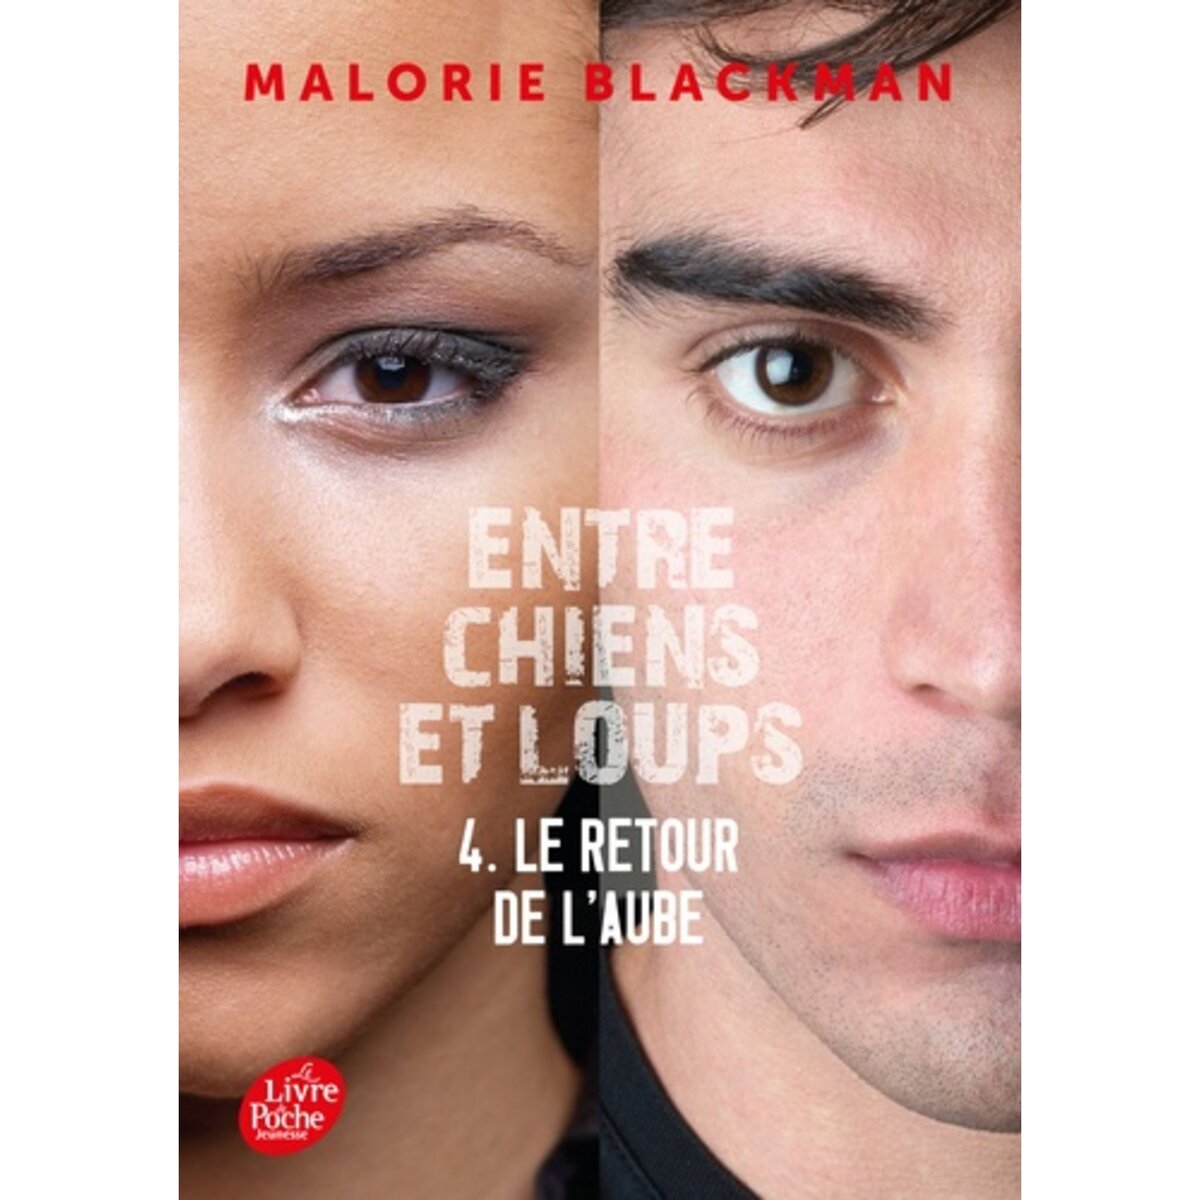  ENTRE CHIENS ET LOUPS TOME 4 : LE RETOUR DE L'AUBE, Blackman Malorie